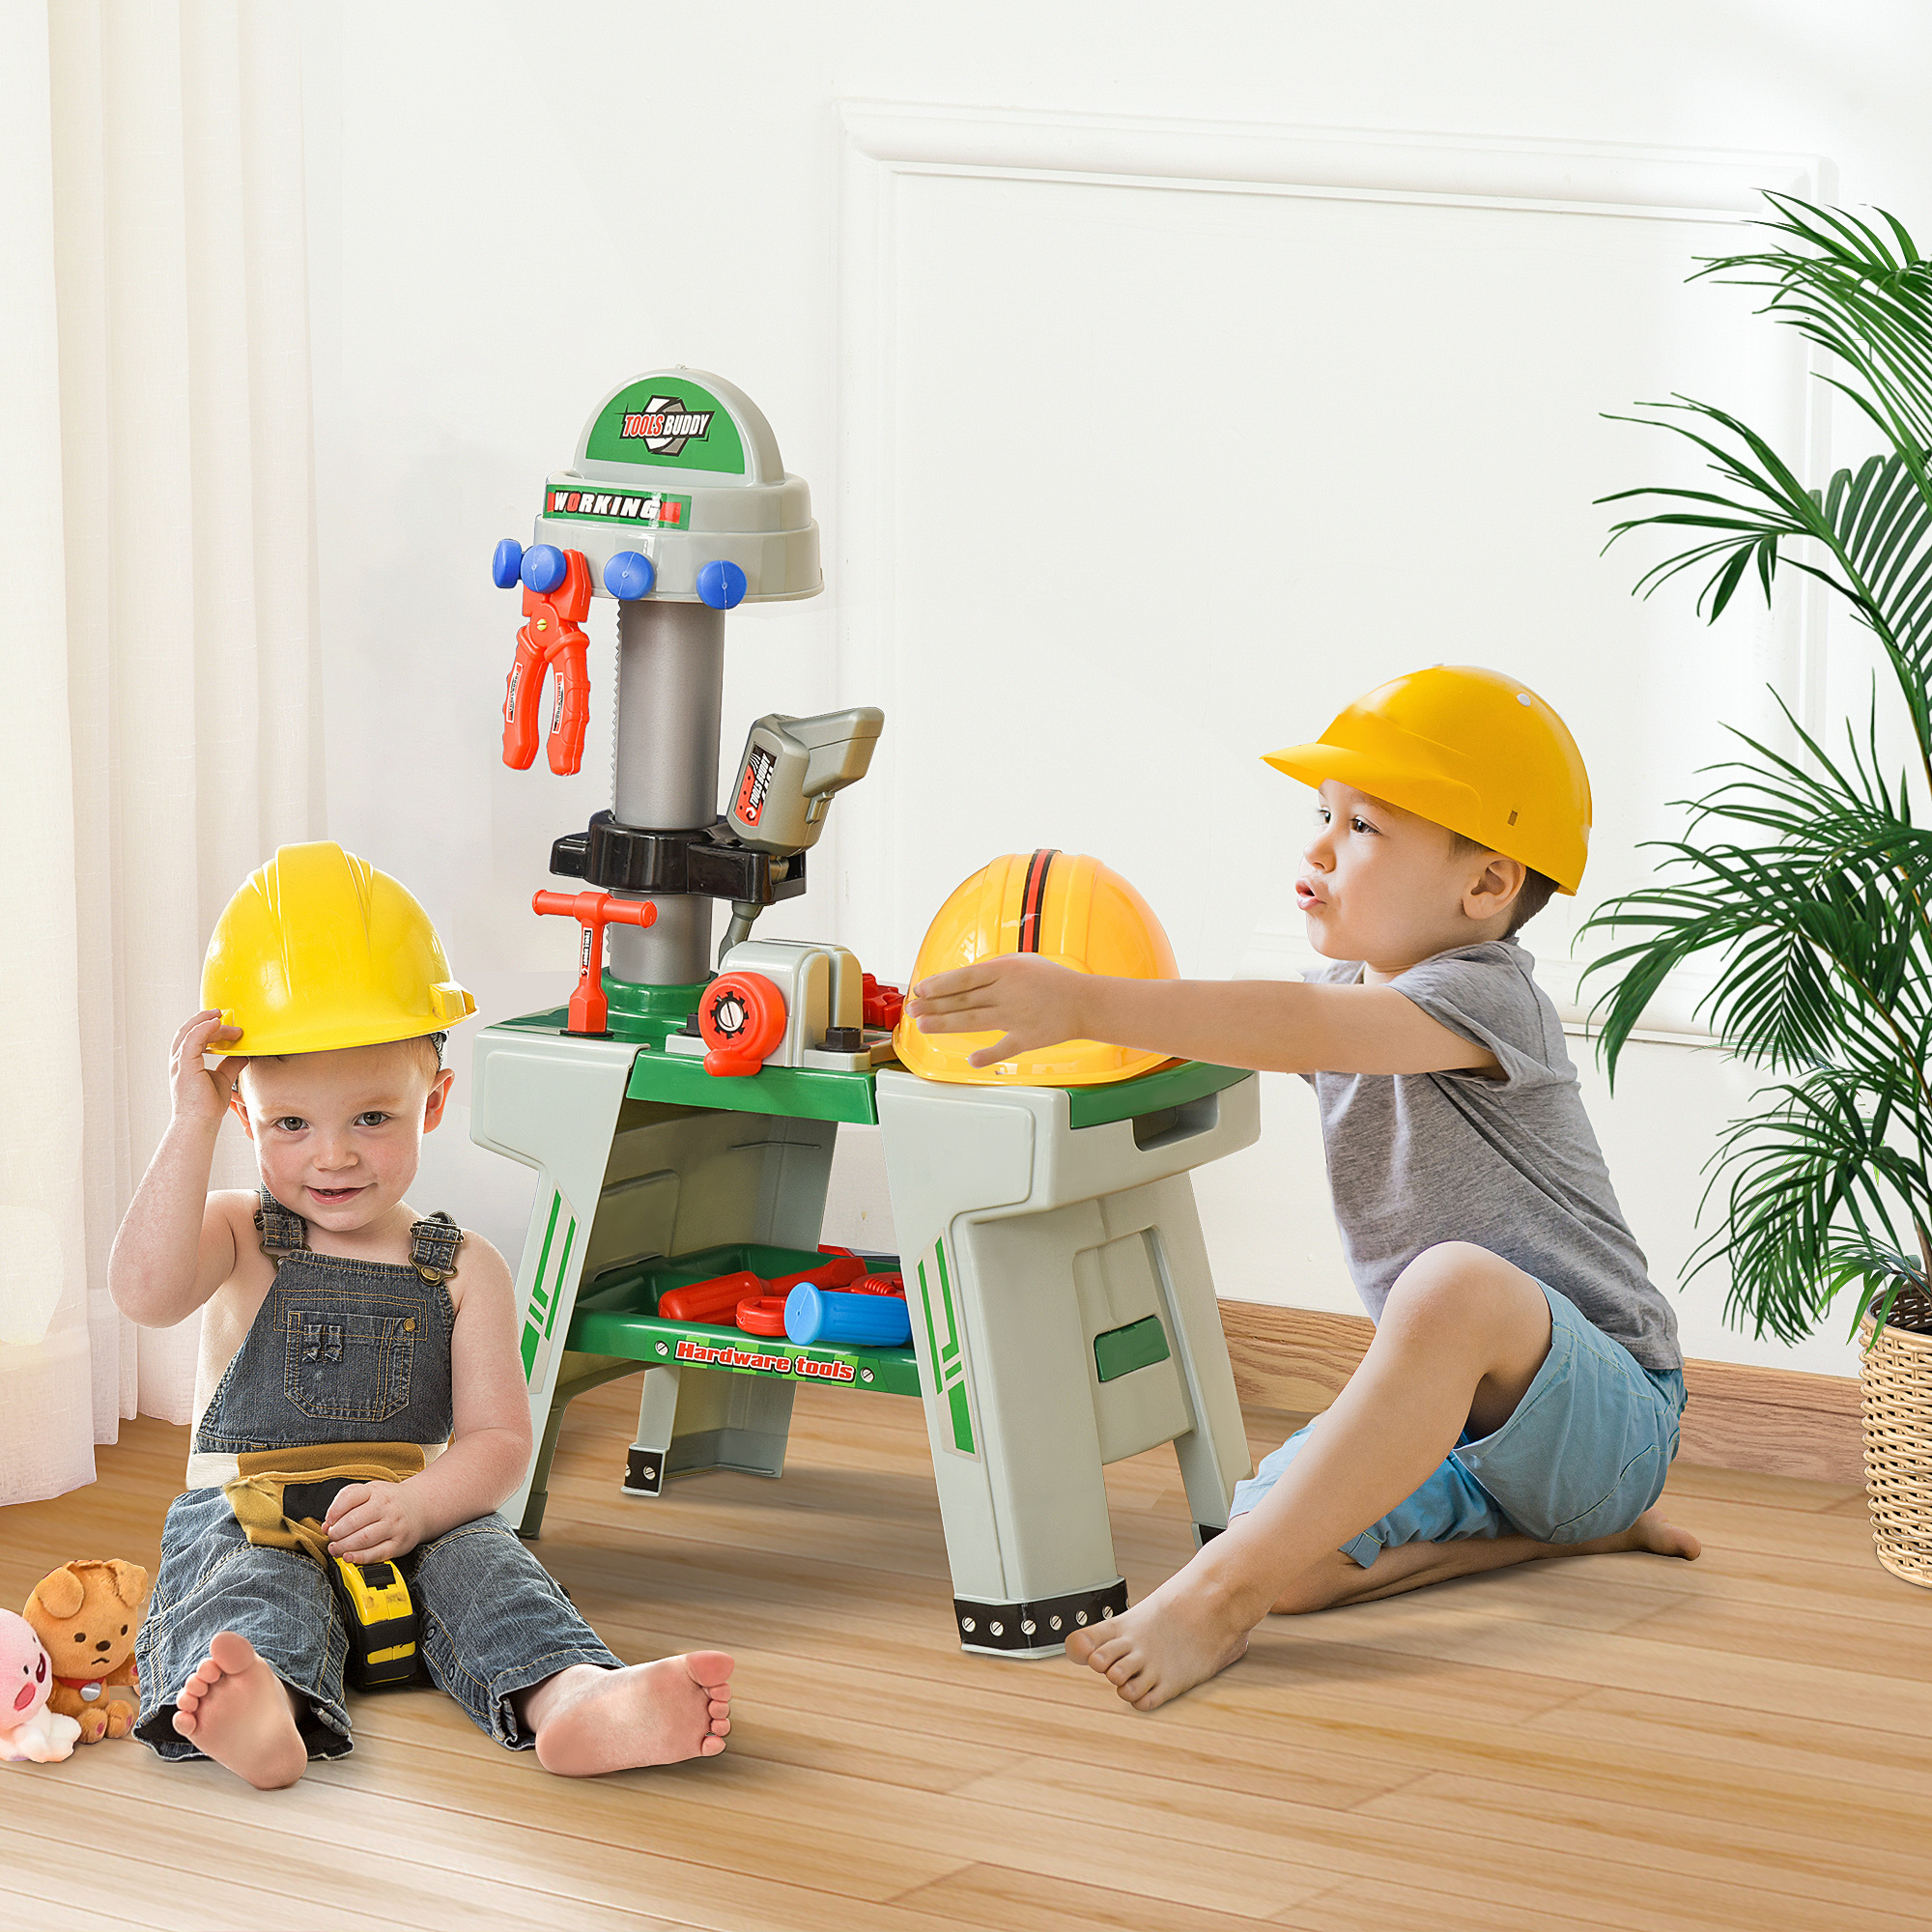 Afbeelding van HOMdotCOM Kinderwerkbank speelgoed met 37 onderdelen van 3 tot 6 jaar 44 cm x 26 cm x 71 cm